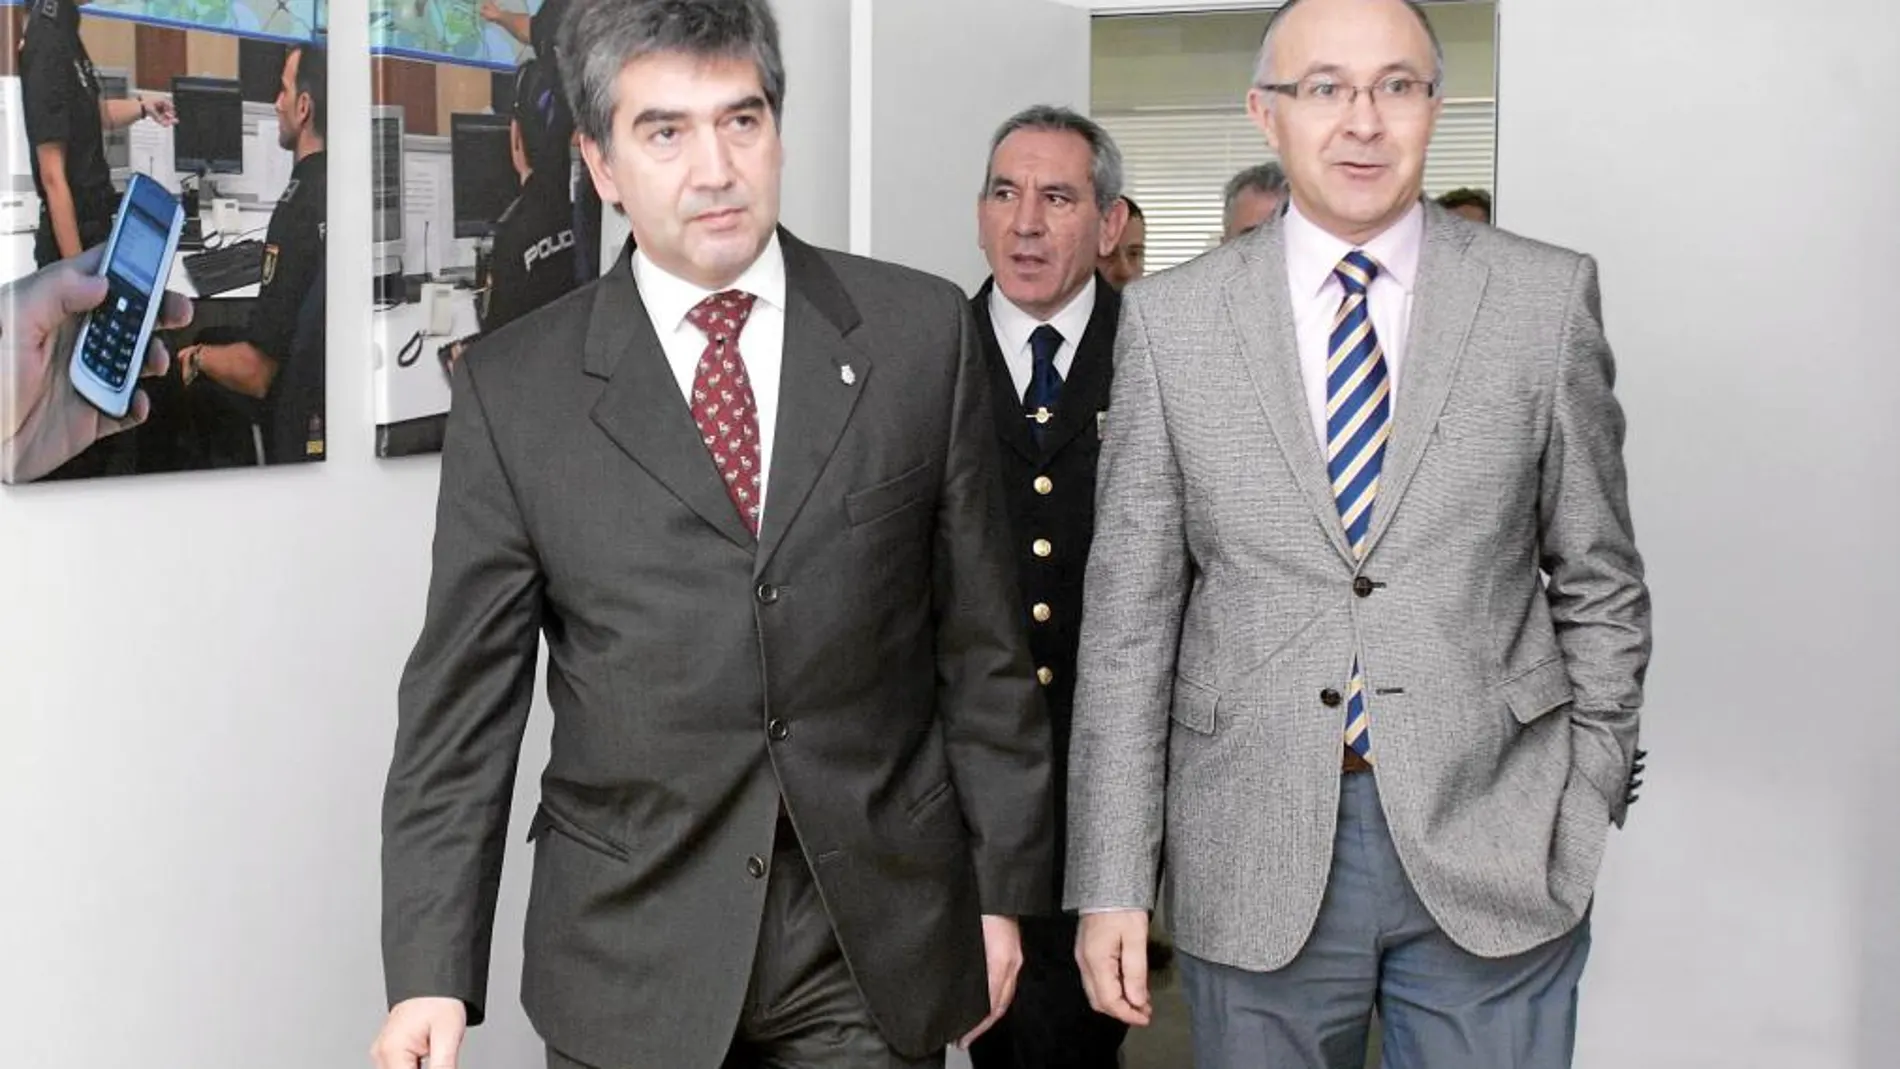 El delegado del Gobierno de España en Castilla y León, Ramiro Ruiz Medrano, junto a Ignacio Cosidó